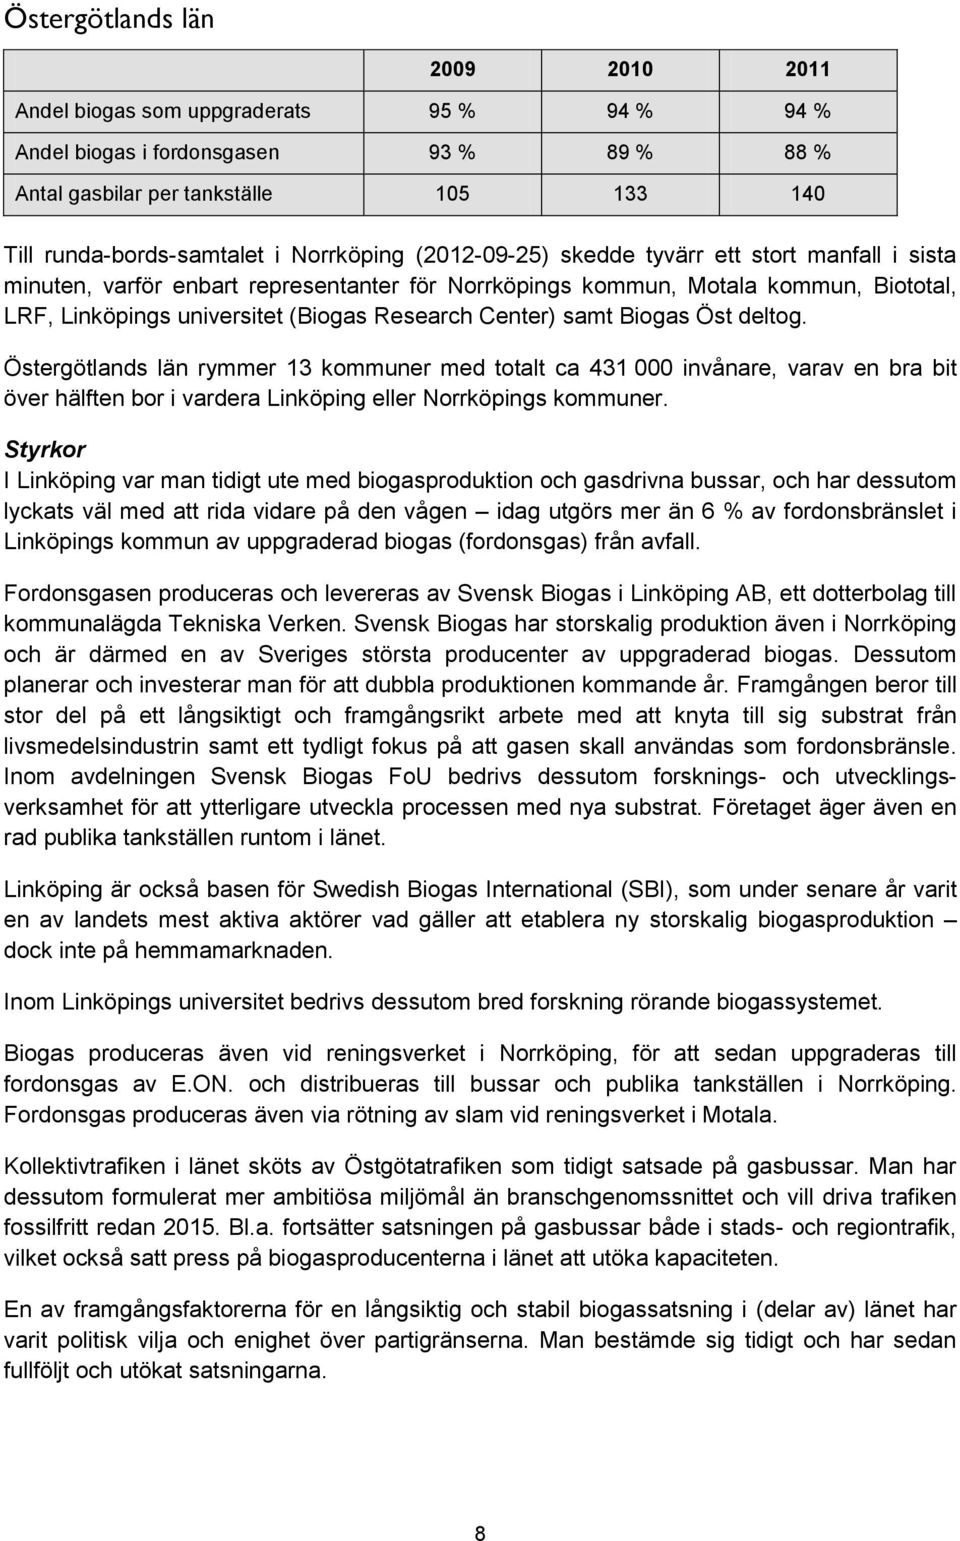 Center) samt Biogas Öst deltog. Östergötlands län rymmer 13 kommuner med totalt ca 431 000 invånare, varav en bra bit över hälften bor i vardera Linköping eller Norrköpings kommuner.